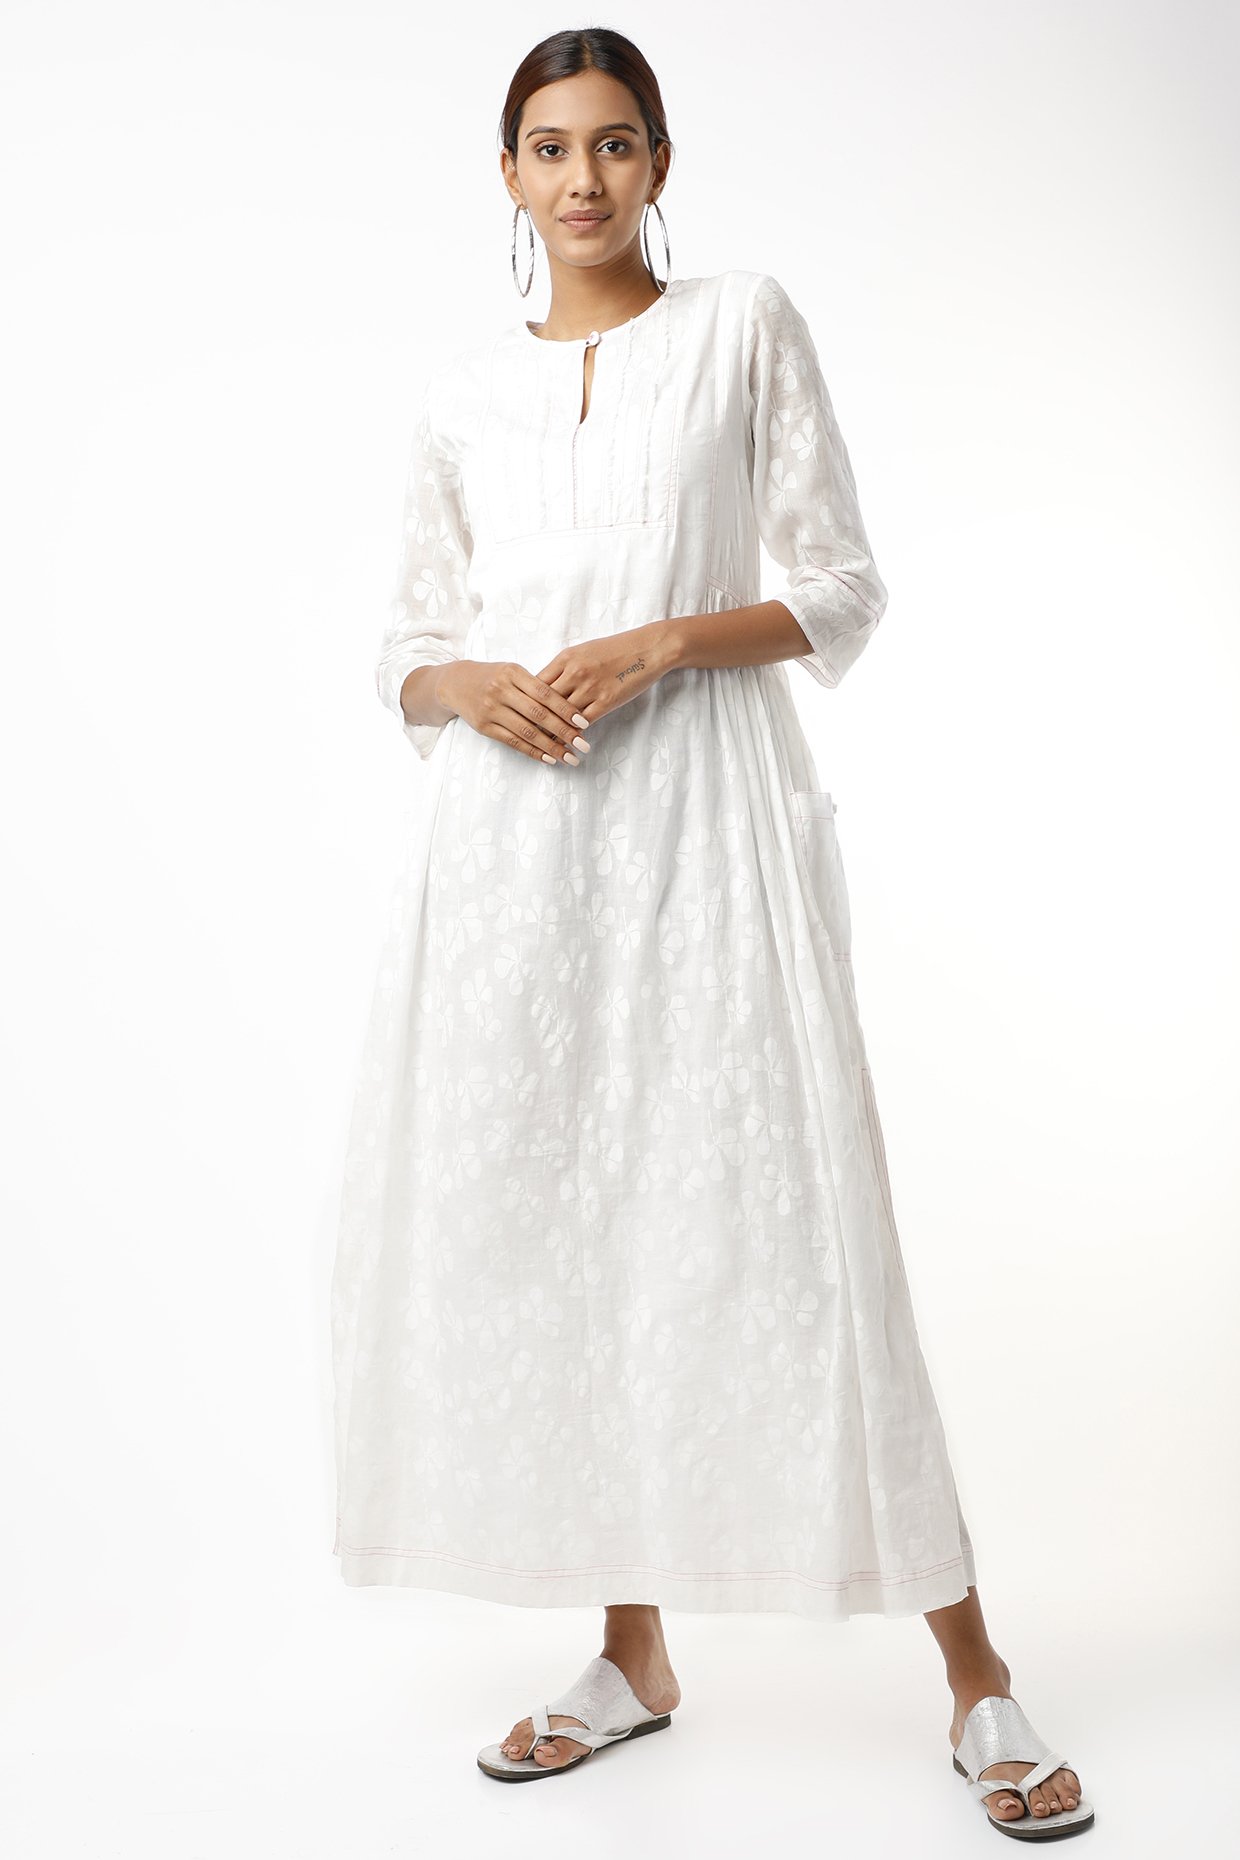 Tonal White Printed Dress